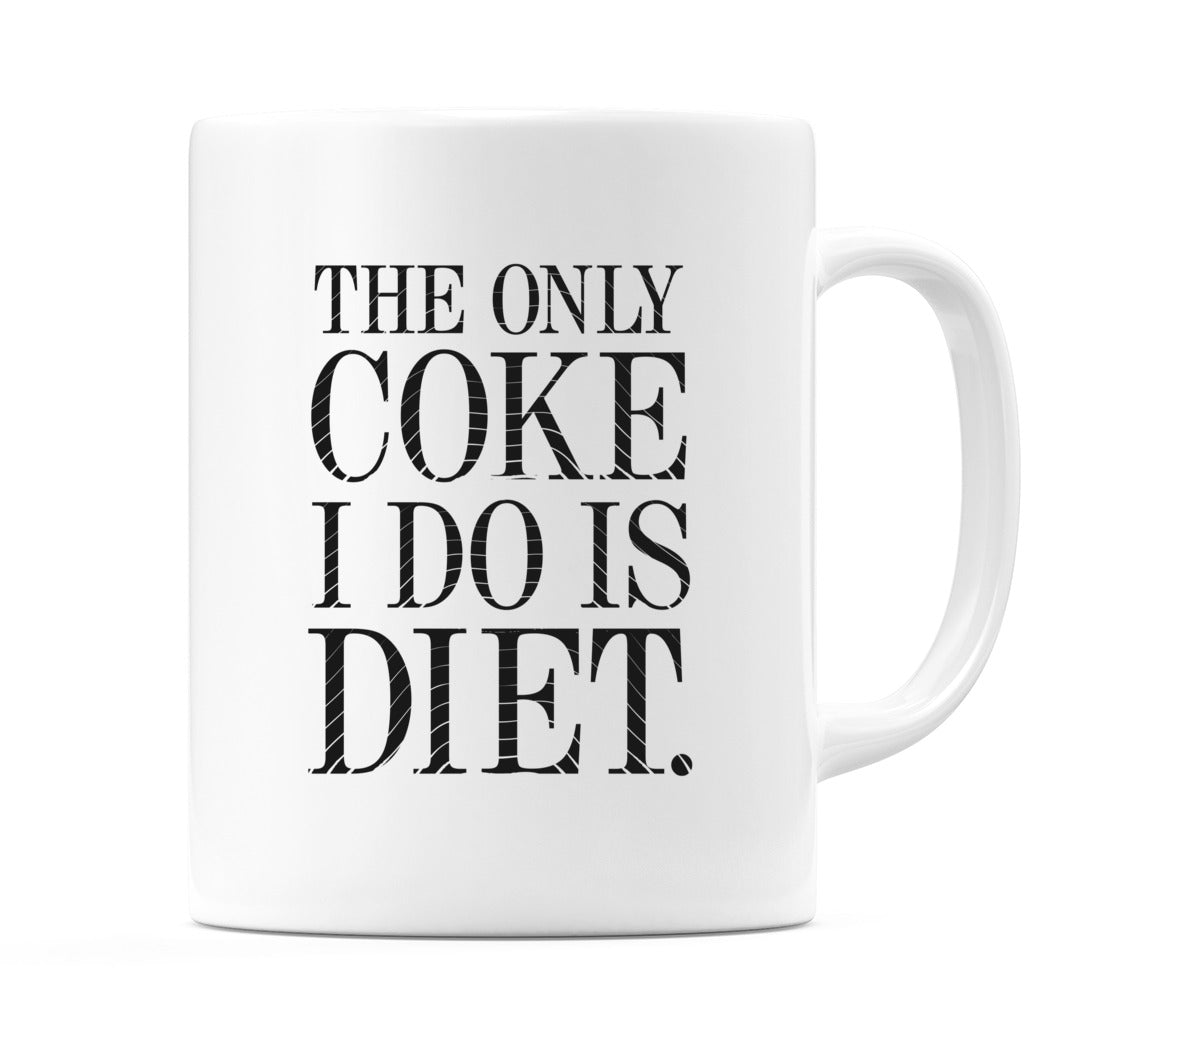 The Only Coke I Do Is Diet. Mug